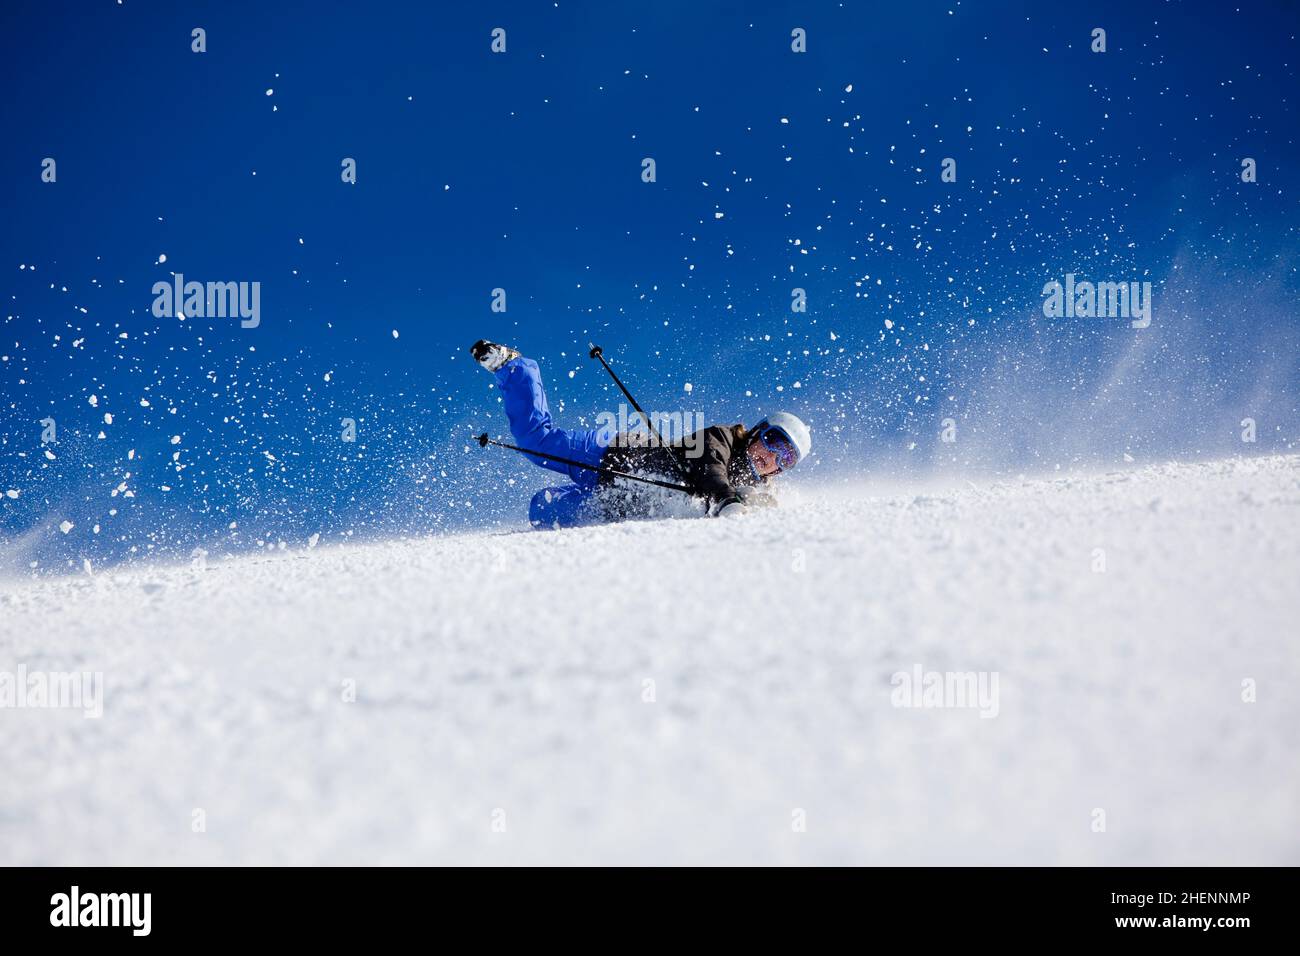 Un esquiador alpino choca duro, expulsando ambos esquís, en la pista de esquí alpino 'The Big Dipper' en la estación de esquí de Falls Creek. Foto de stock